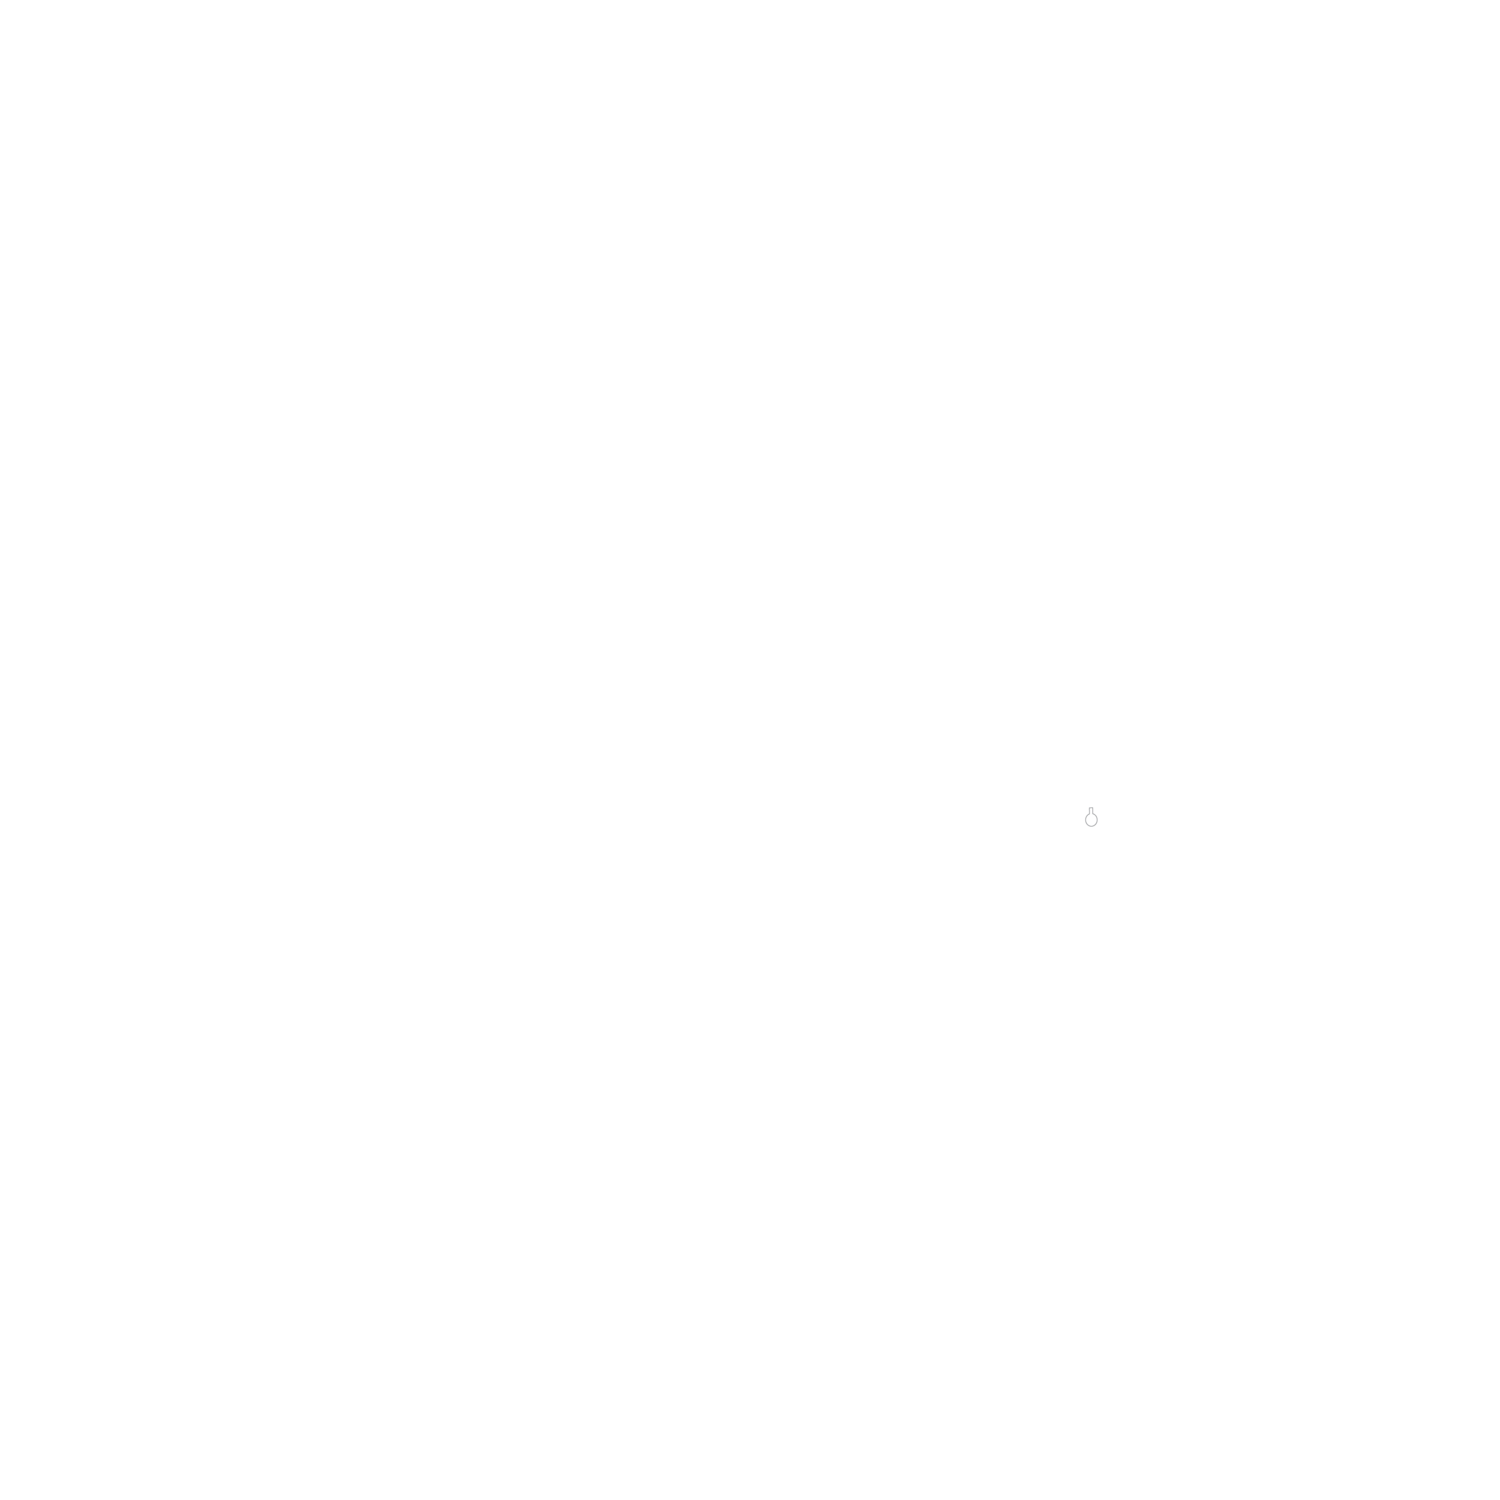 Carteret Catch